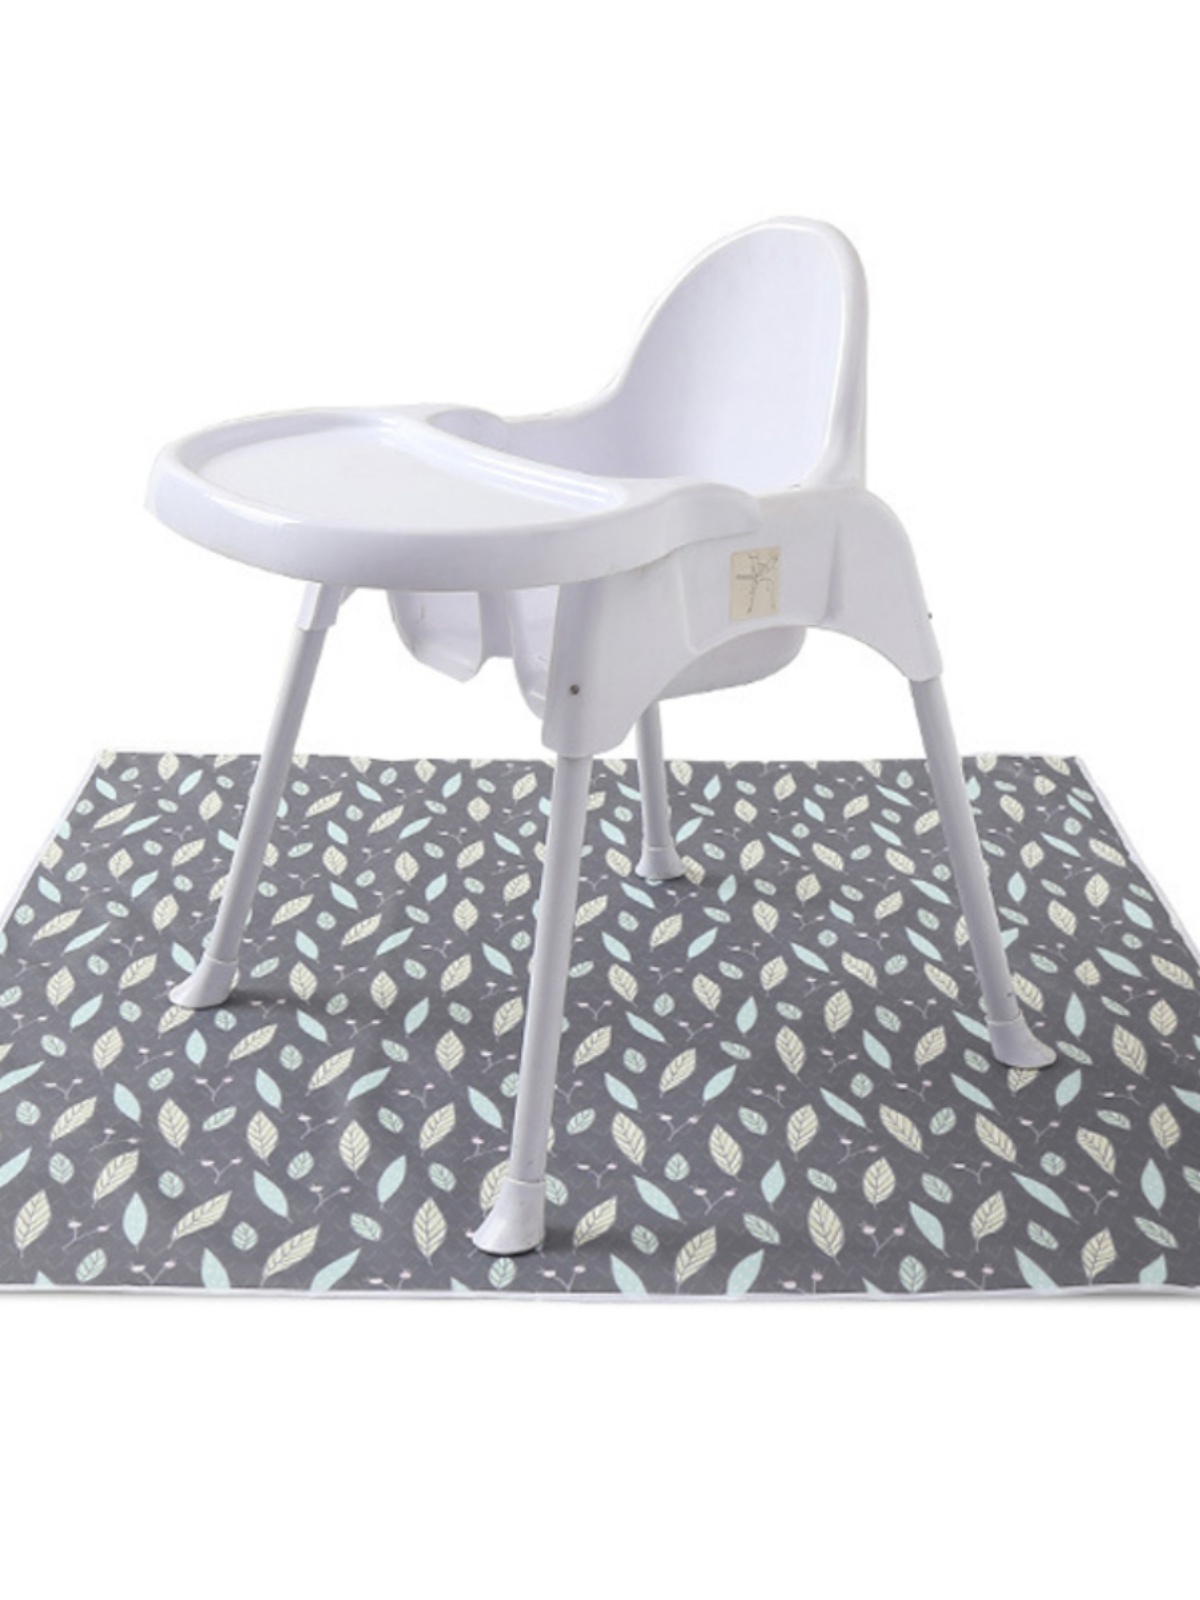 簡約現代高腳餐椅防水地墊防滑可機洗適合客廳家用